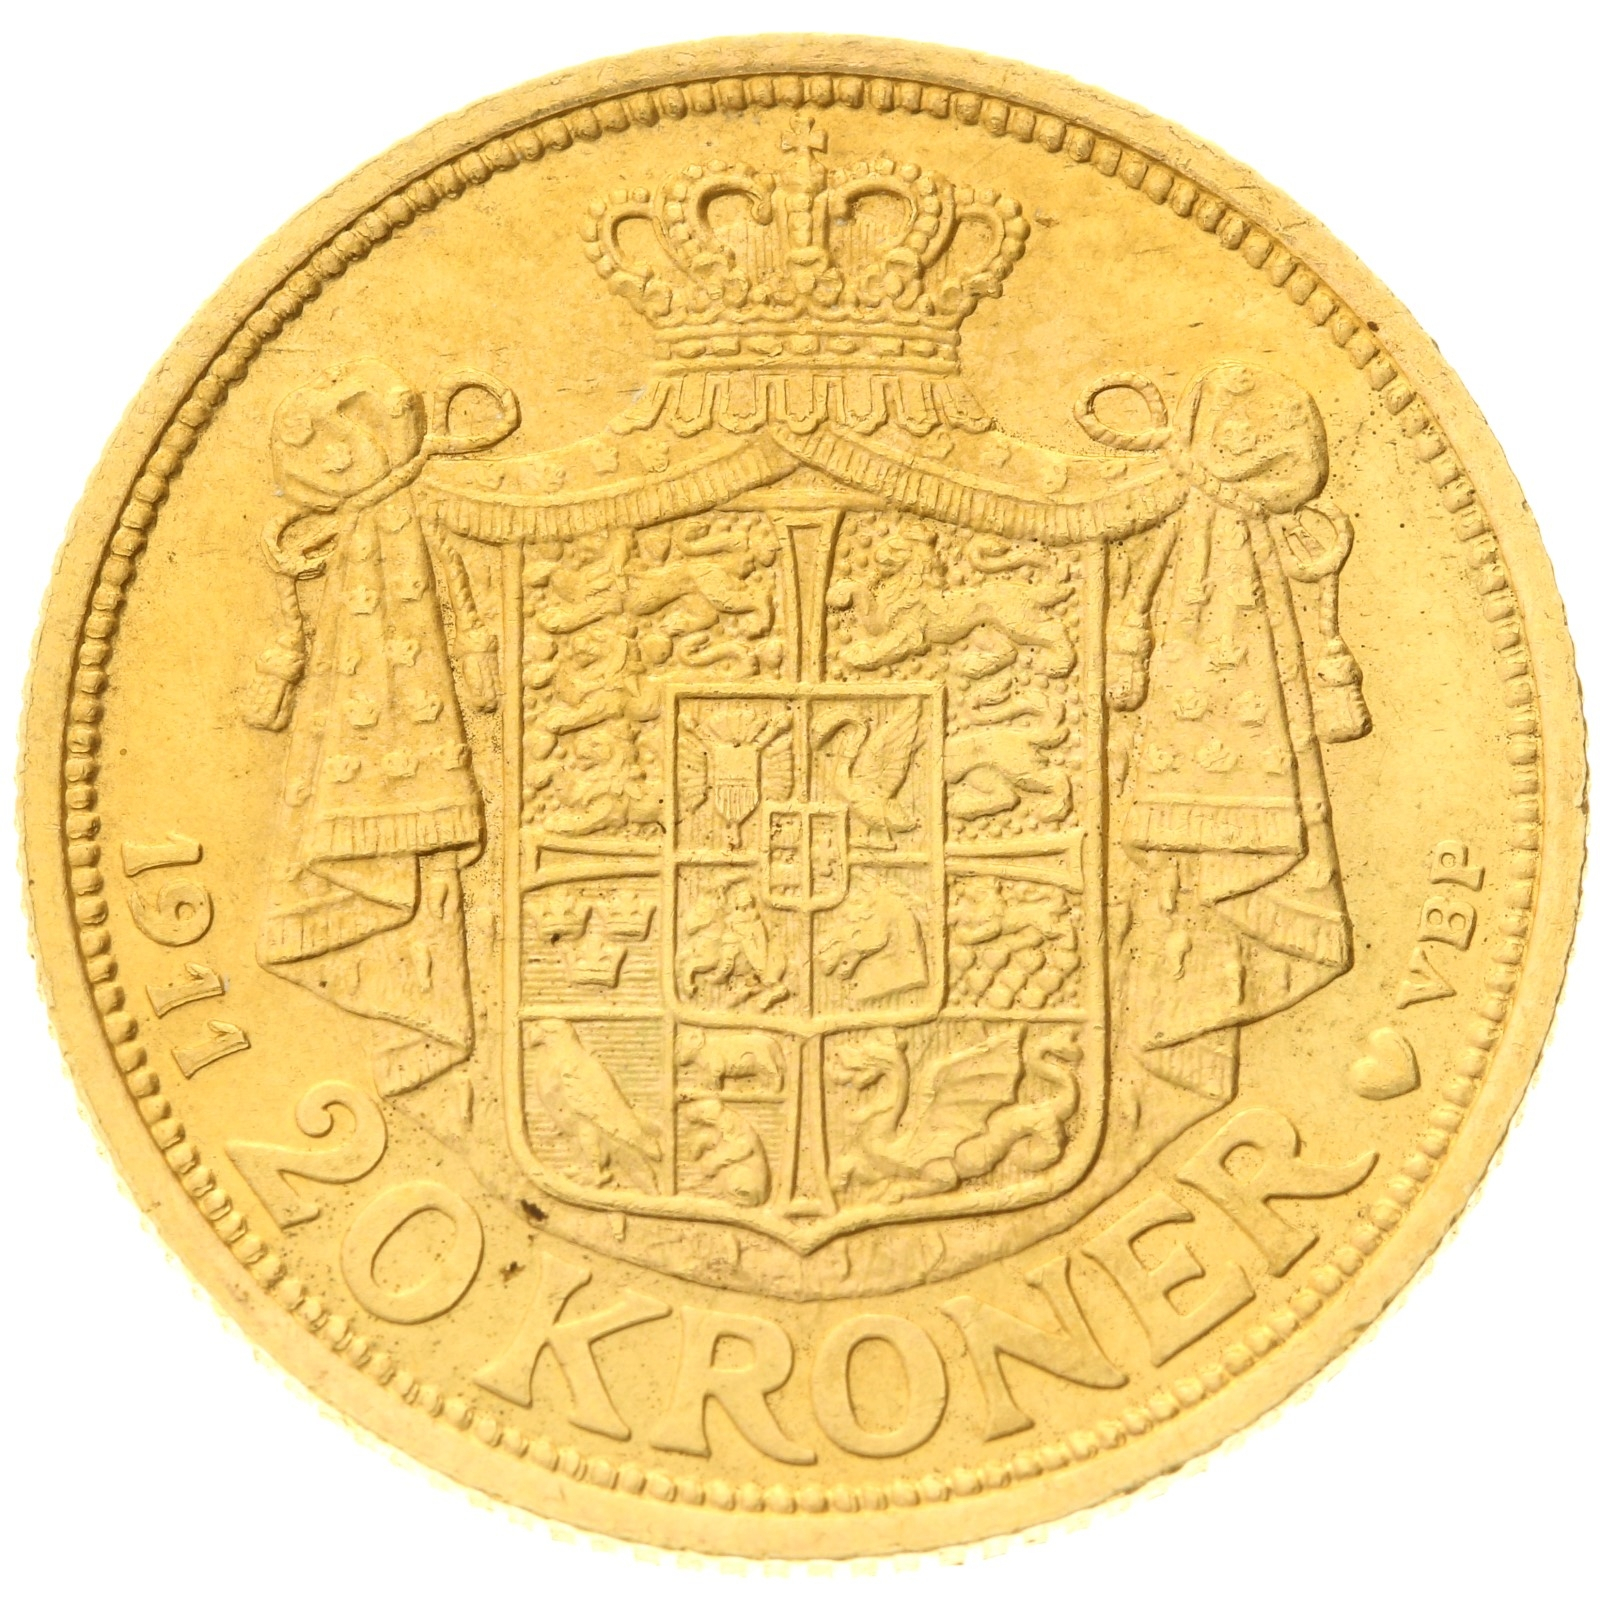 Denmark - 20 kroner - 1911 - Frederik VIII 